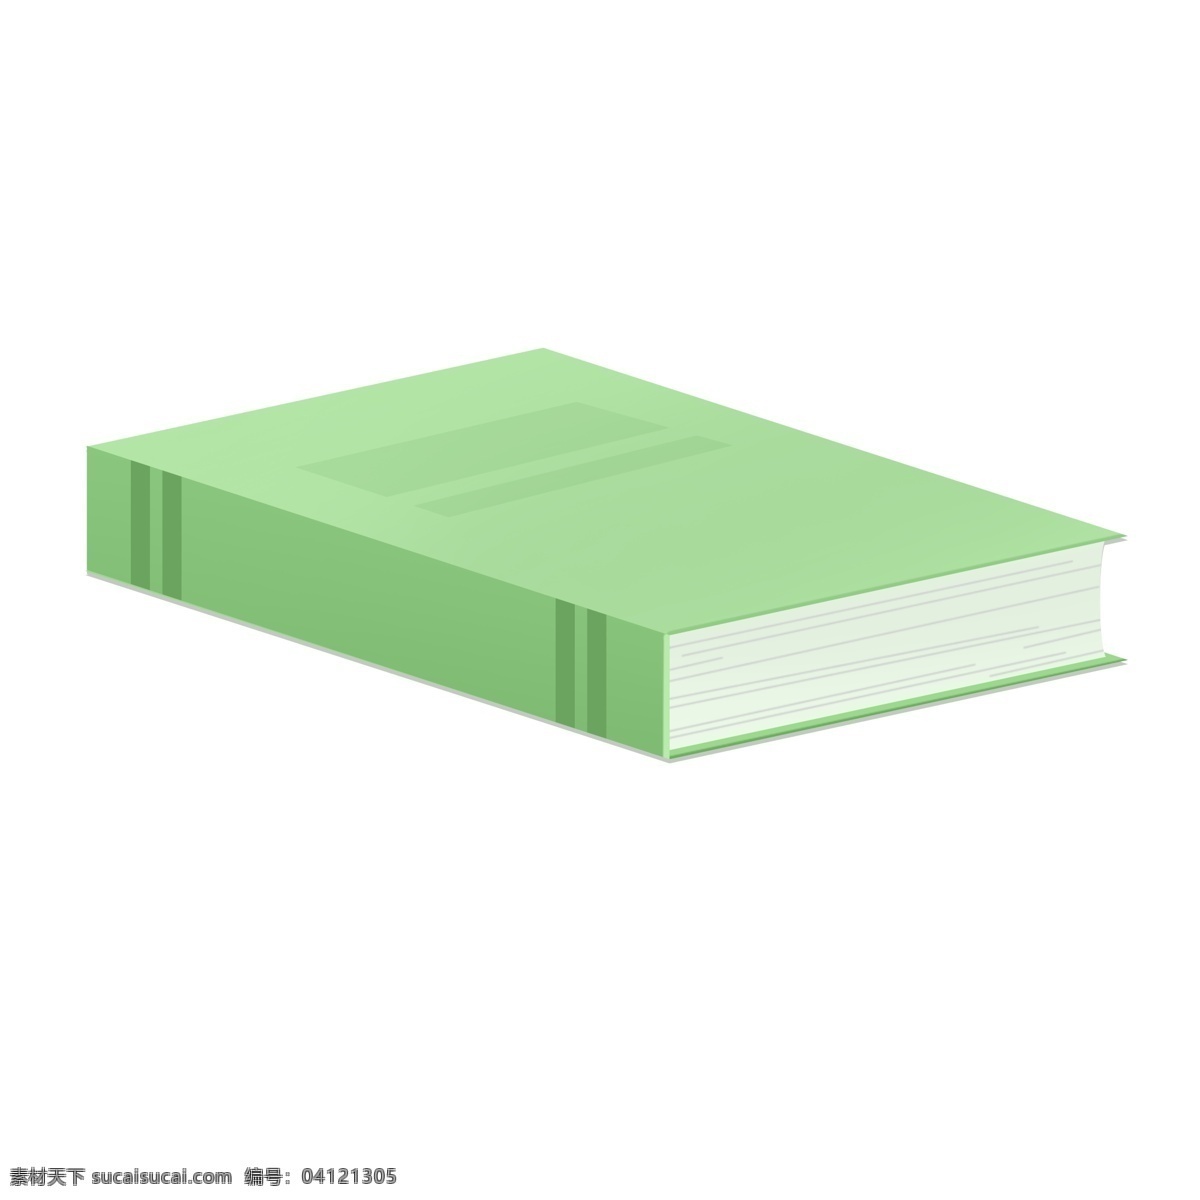 绿色 书籍 免 抠 图 课外书 好好学习 天天向上 书本 教科书 教室 里 上课